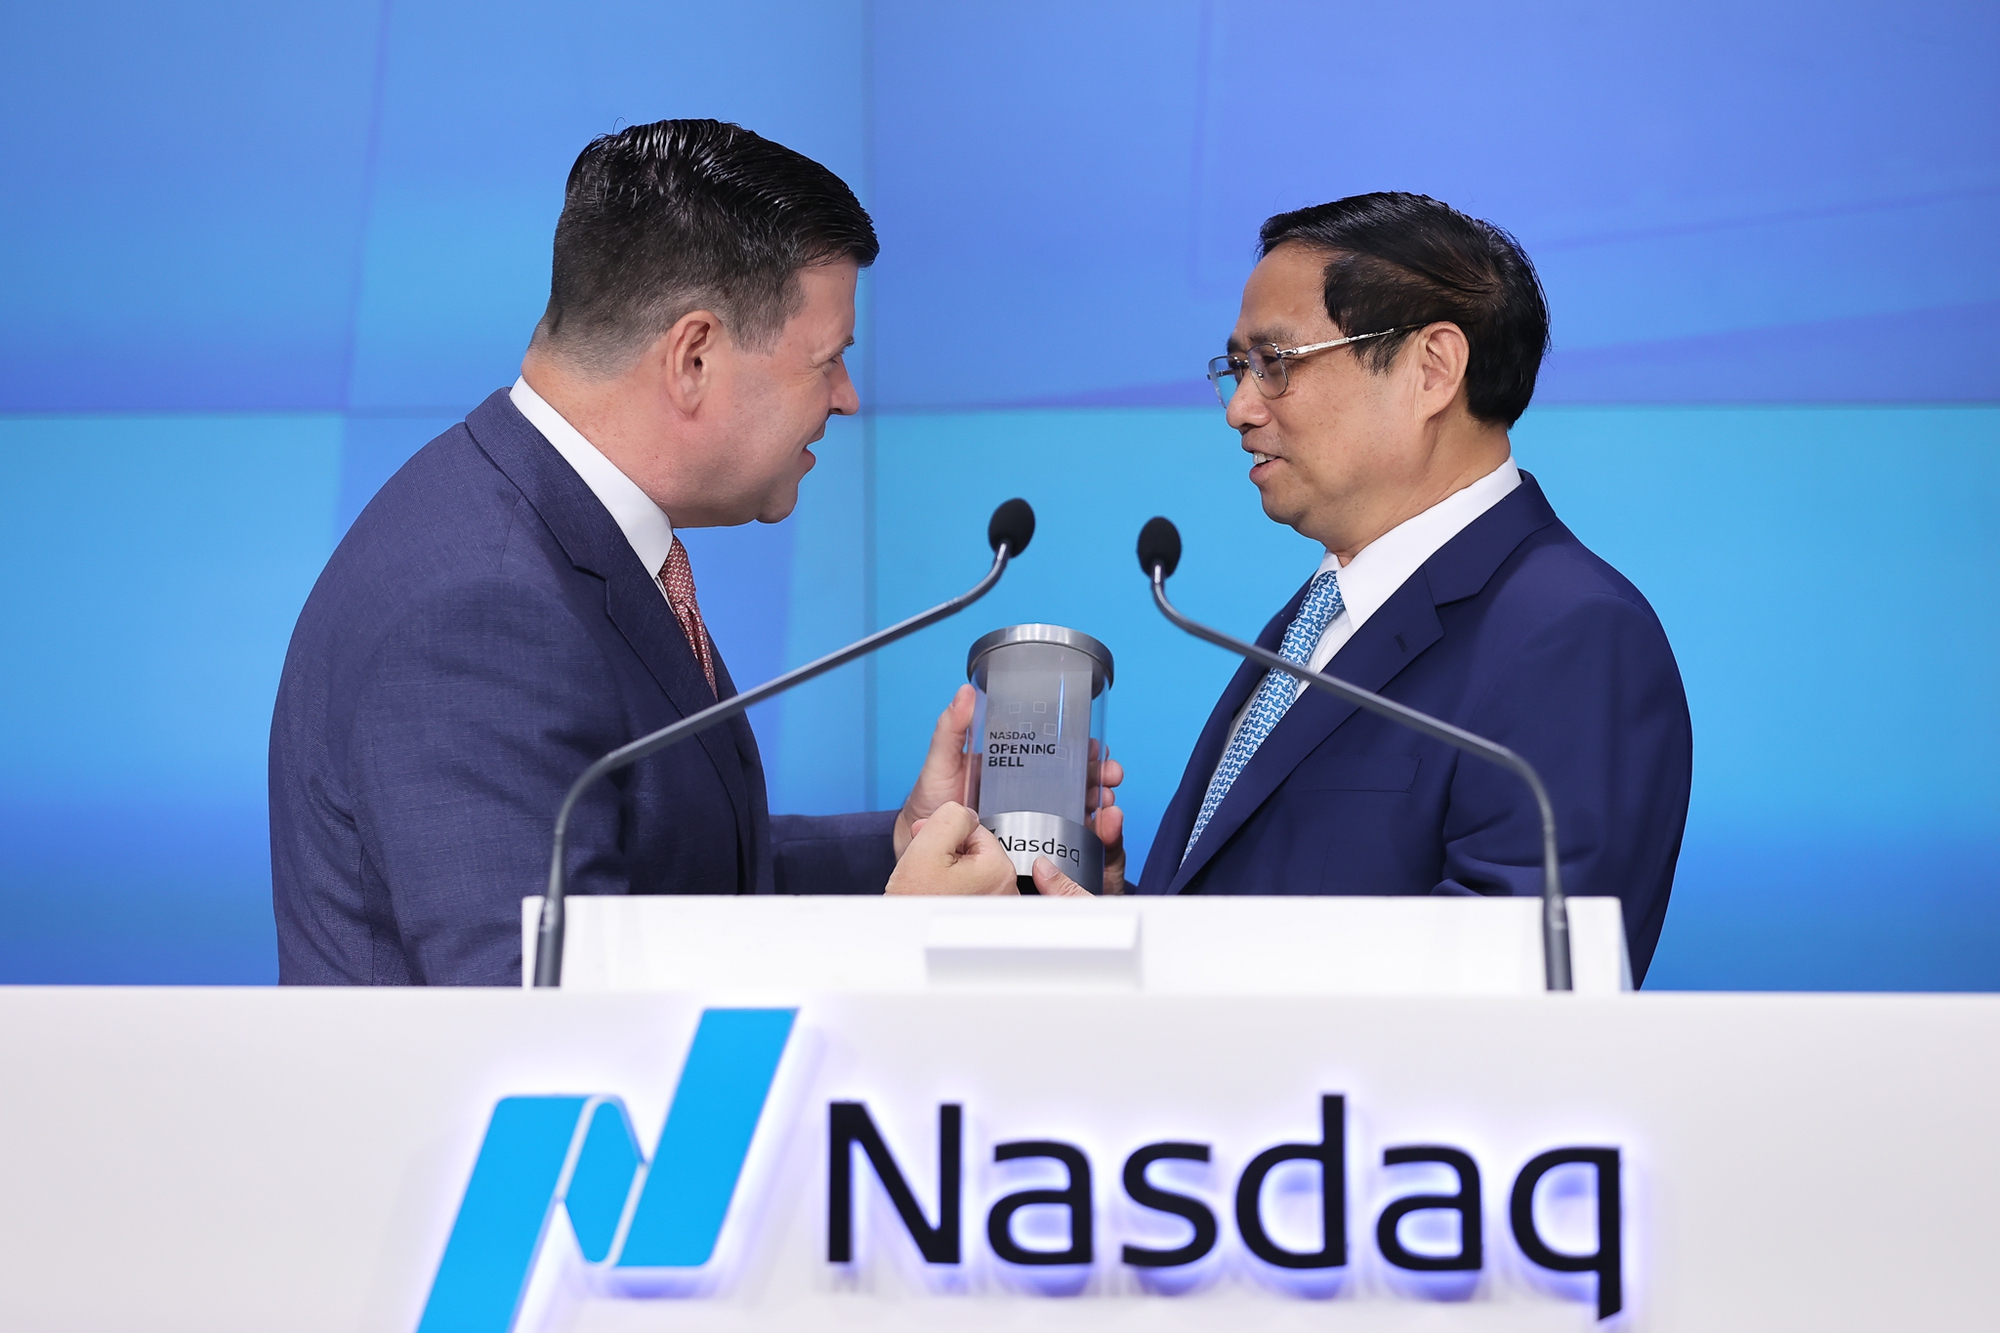 Thủ tướng rung chuông tại Sàn chứng khoán NASDAQ, kêu gọi các nhà đầu tư Hoa Kỳ - Ảnh 2.